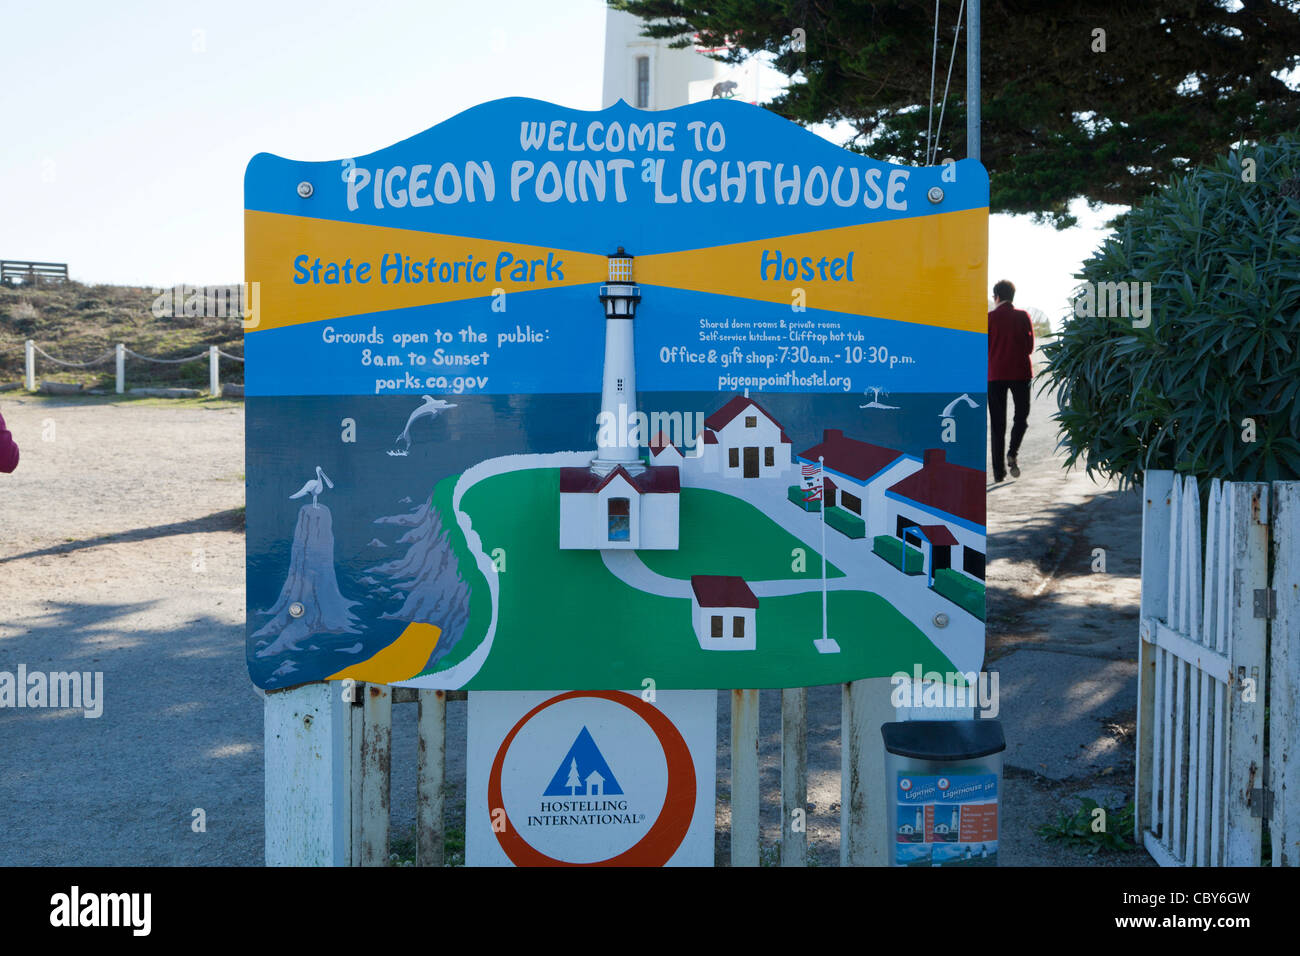 Pigeon Point Lighthouse e State Historic Park e ostello segno di benvenuto Foto Stock